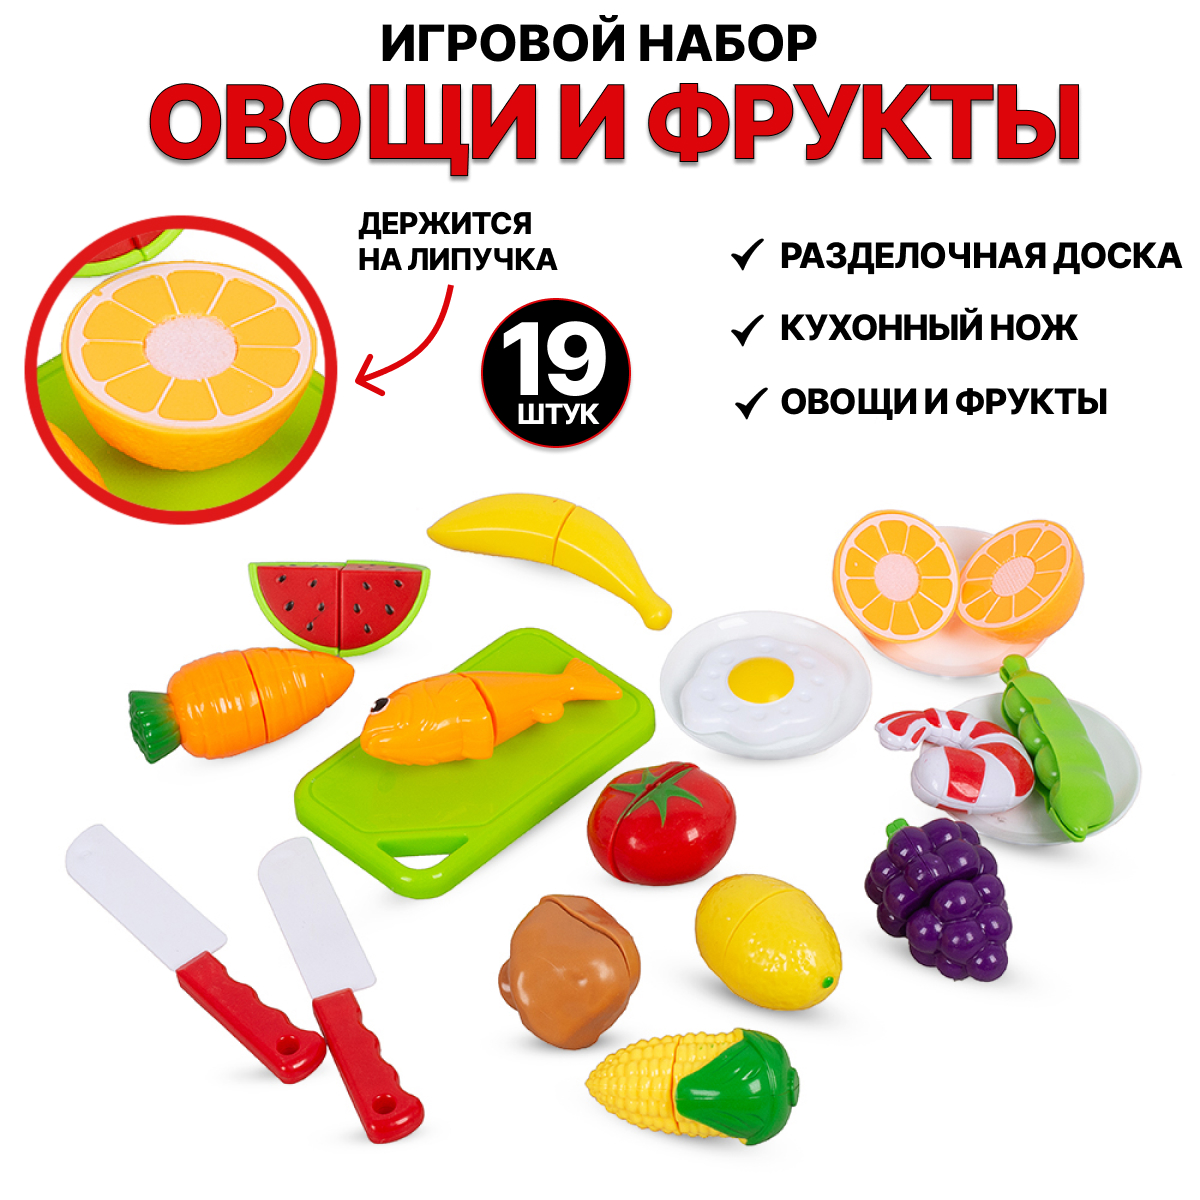 Игровой набор Tongde Овощи и фрукты для резки на липучках 19 предметов 666-85 набор продуктов для резки sima land гурман 20 предметов